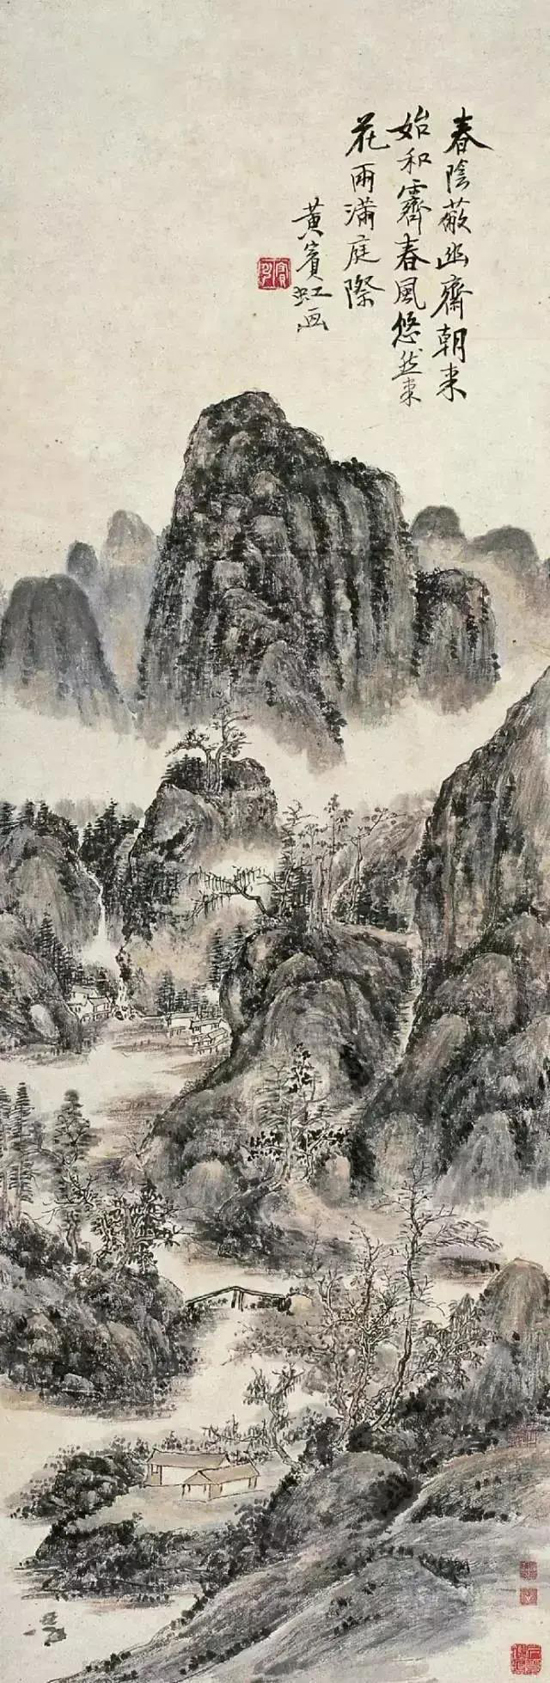 中国画的笔墨之道